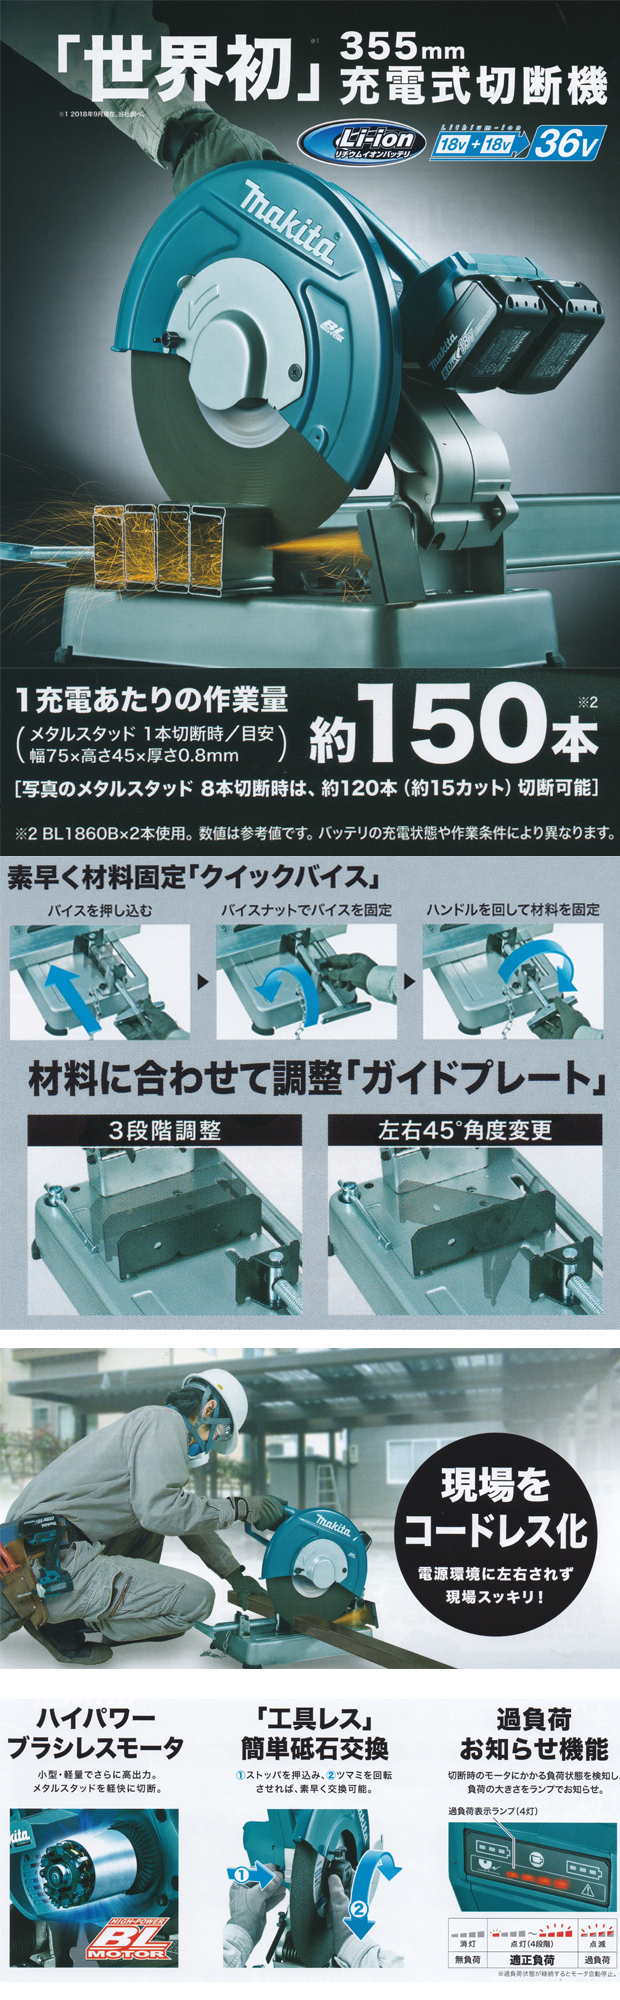 マキタ 355mm充電式切断機 LW141DZ 電動工具・エアー工具・大工道具